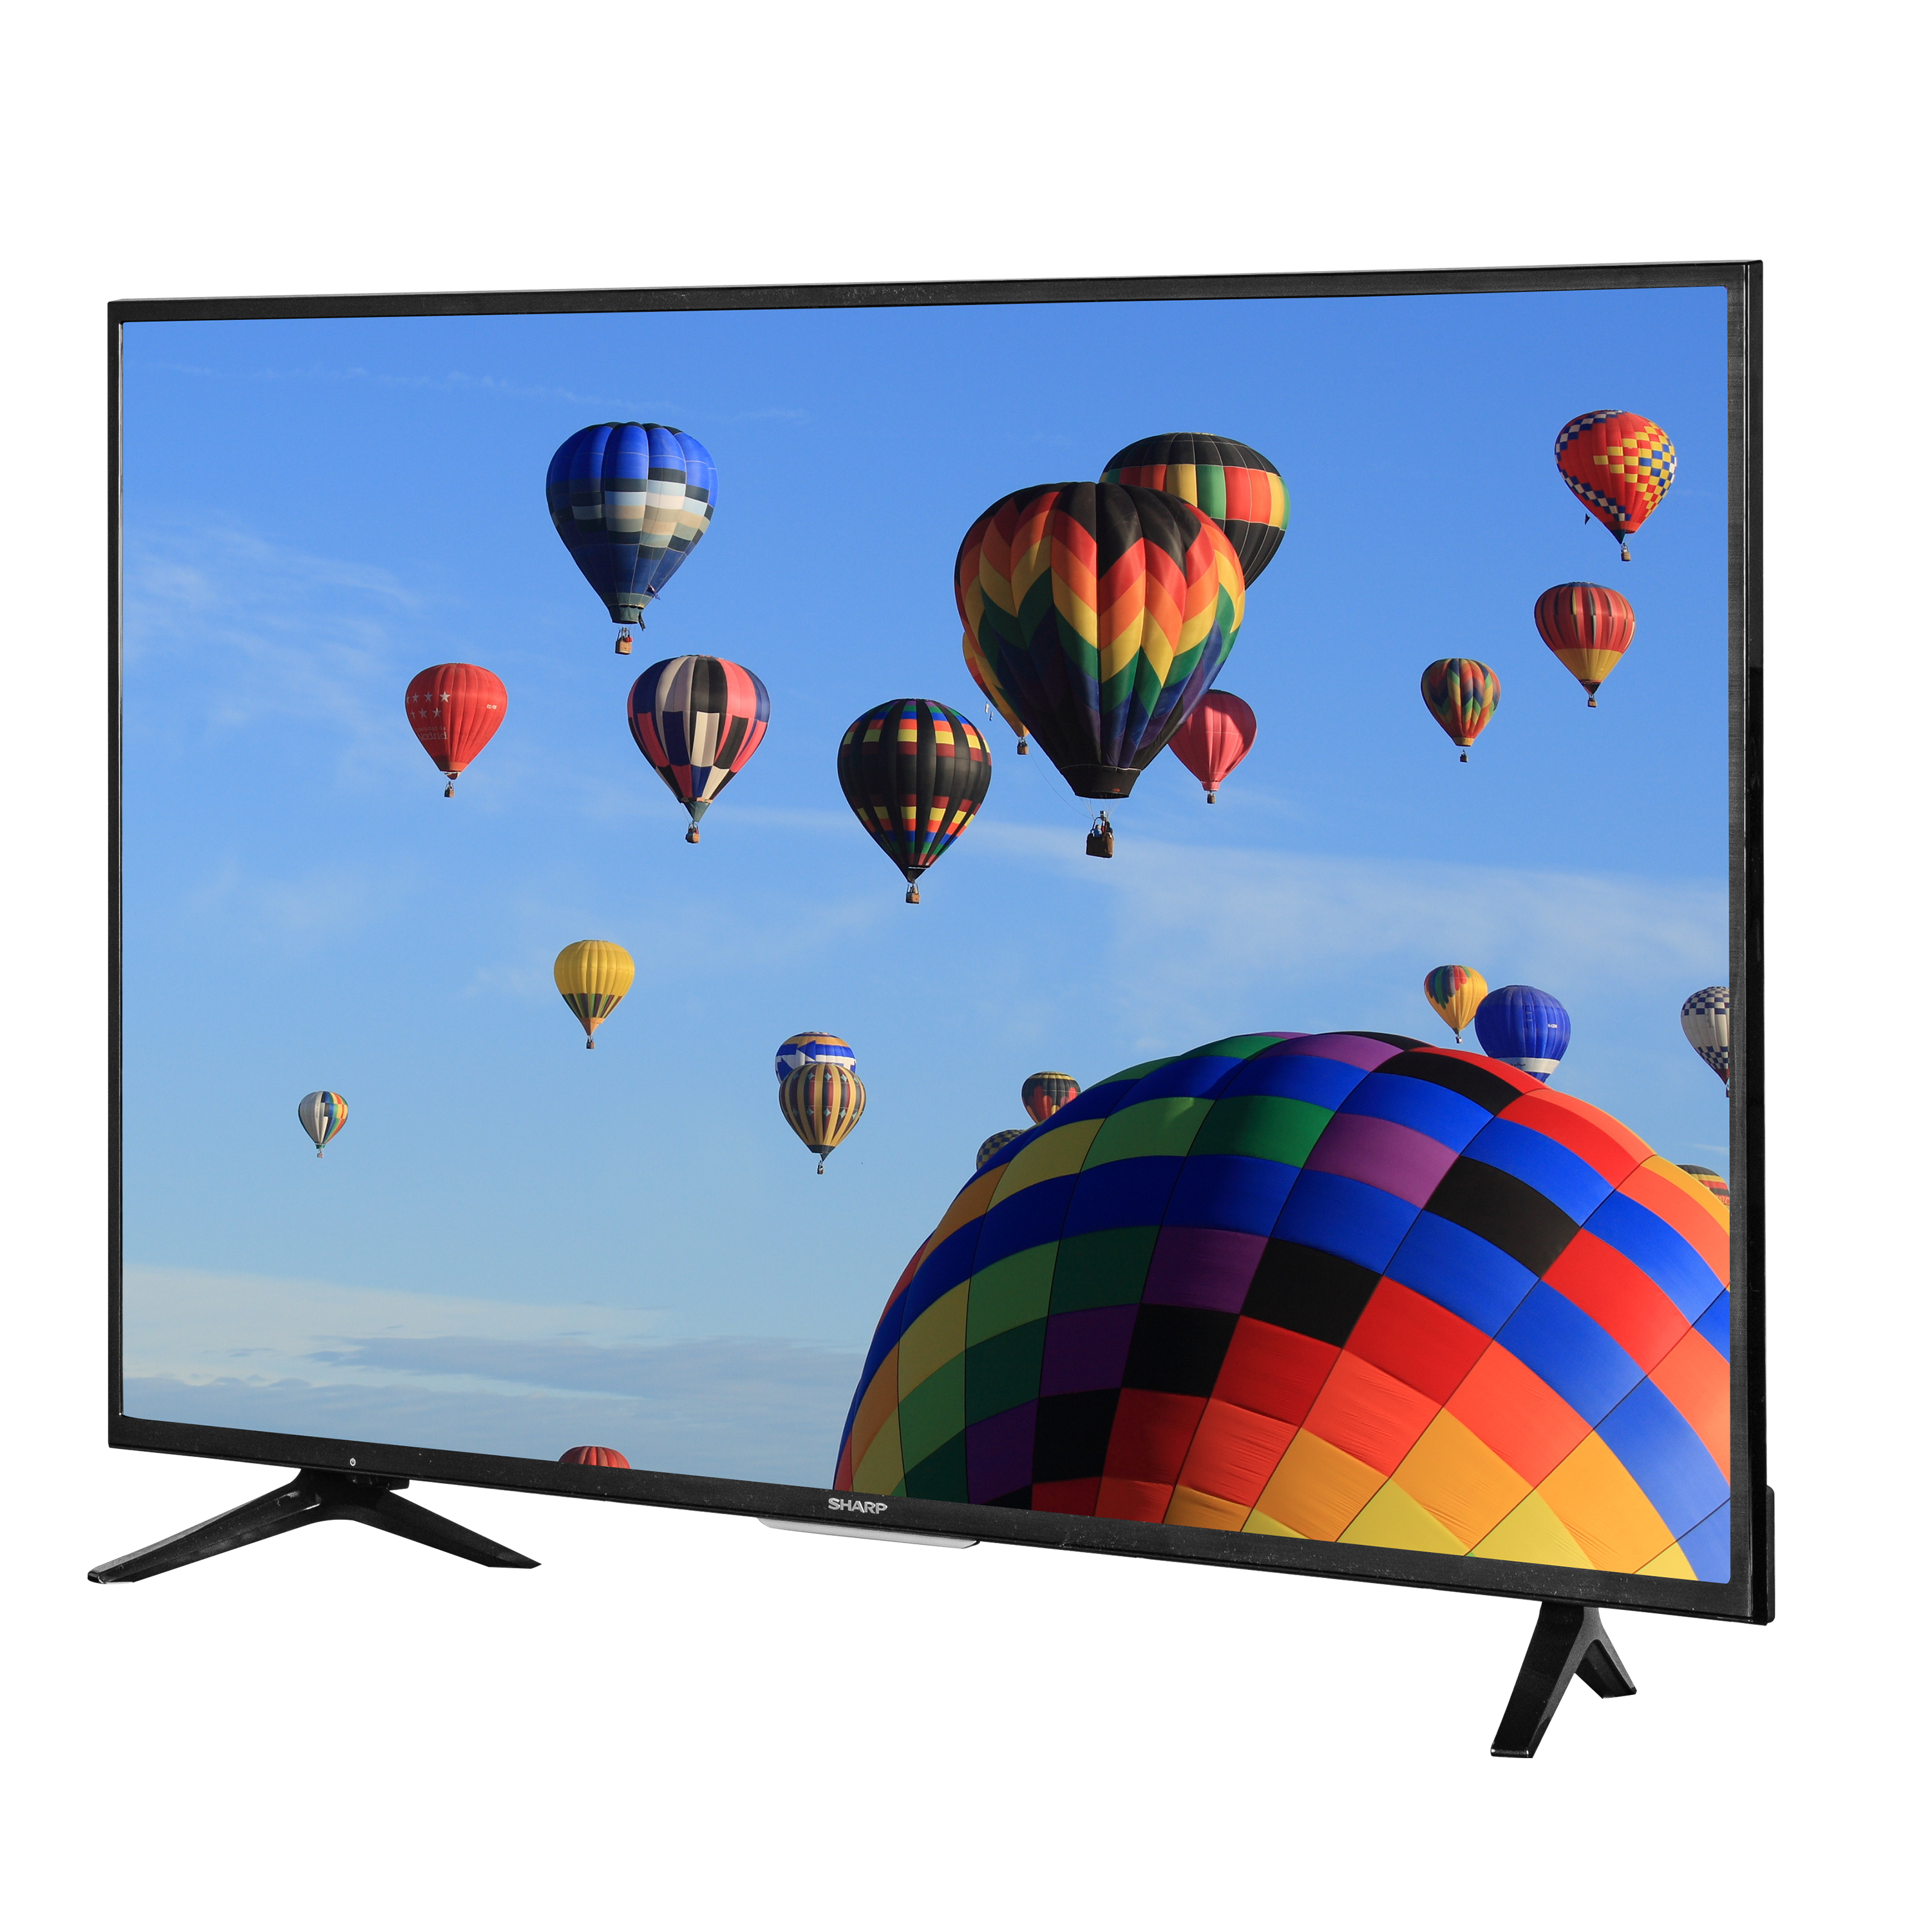 50″ Sharp 4K Ultra HD smart LED TV for $280